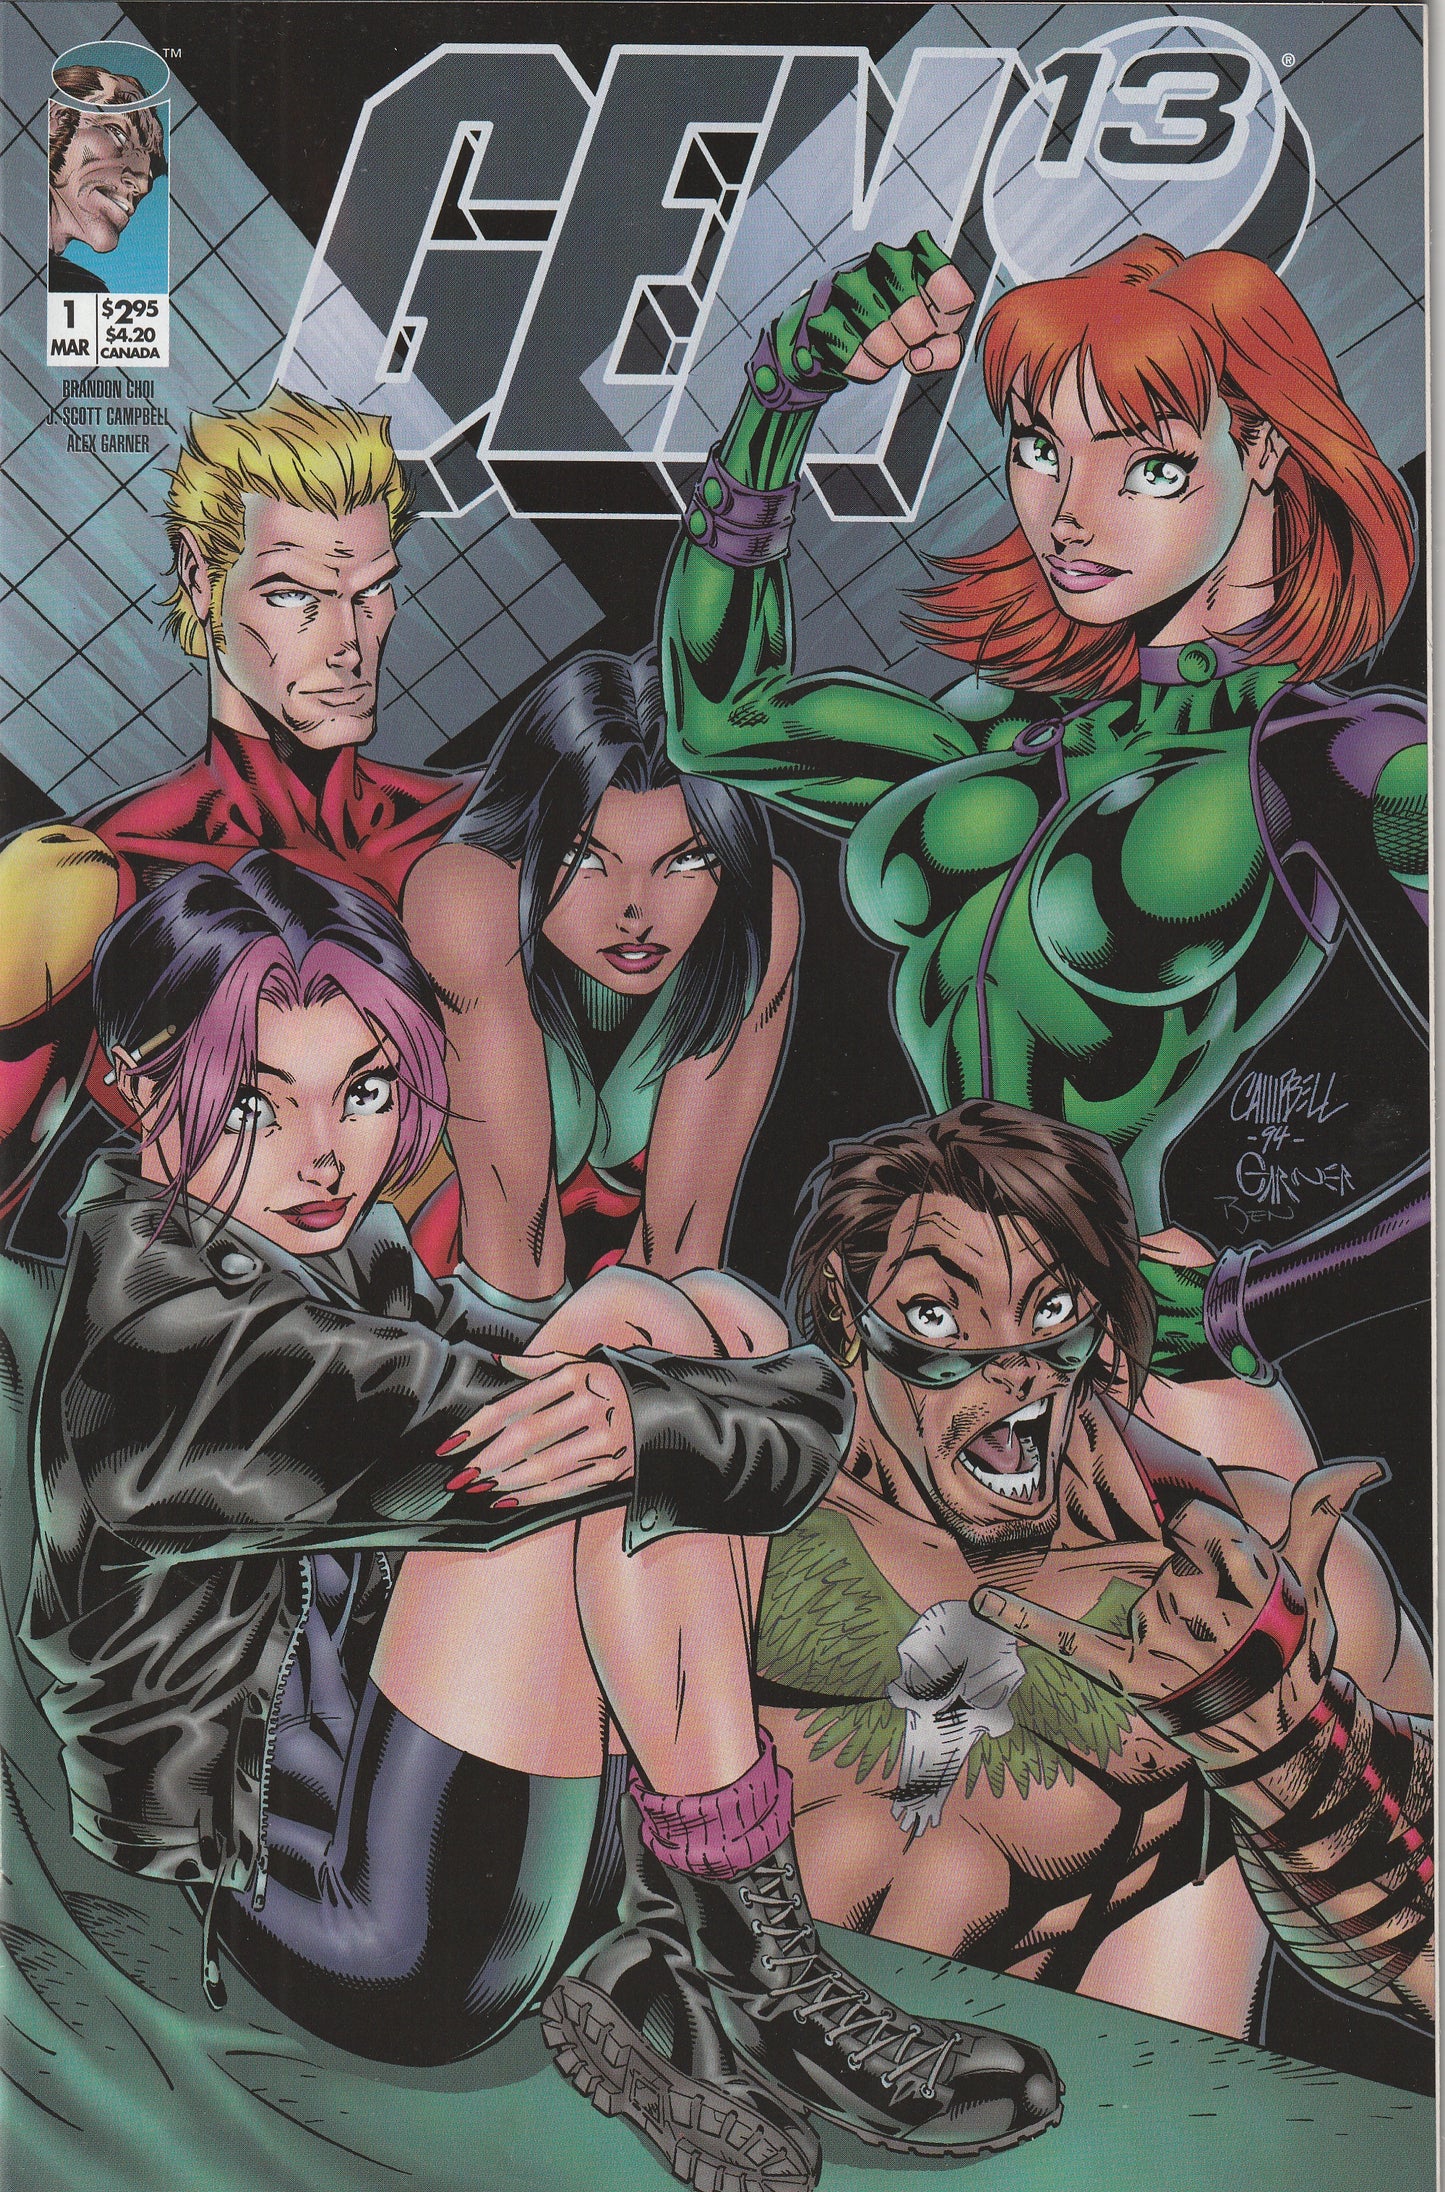 Gen 13 #1 (Volume 2, 1995) - Thumbs up cover